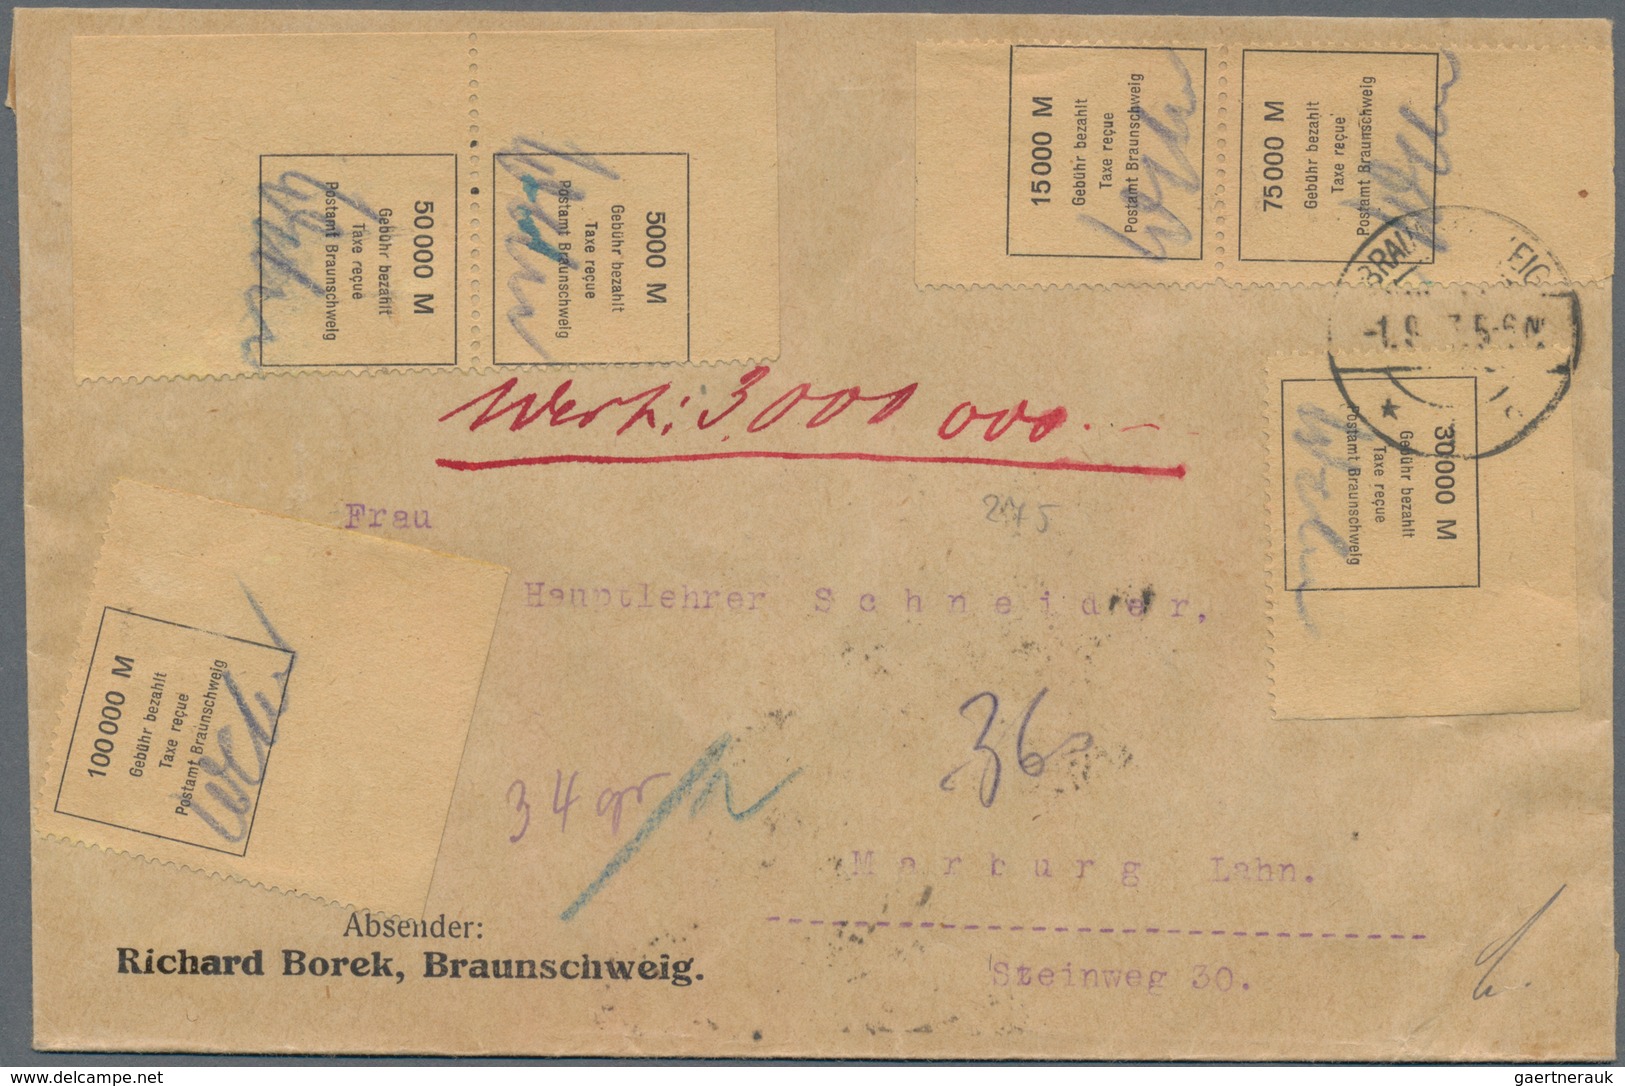 Deutsches Reich - Lokalausgaben 1918/23: BRAUNSCHWEIG: 1923, Lot von insgesamt sieben Belegen: vier